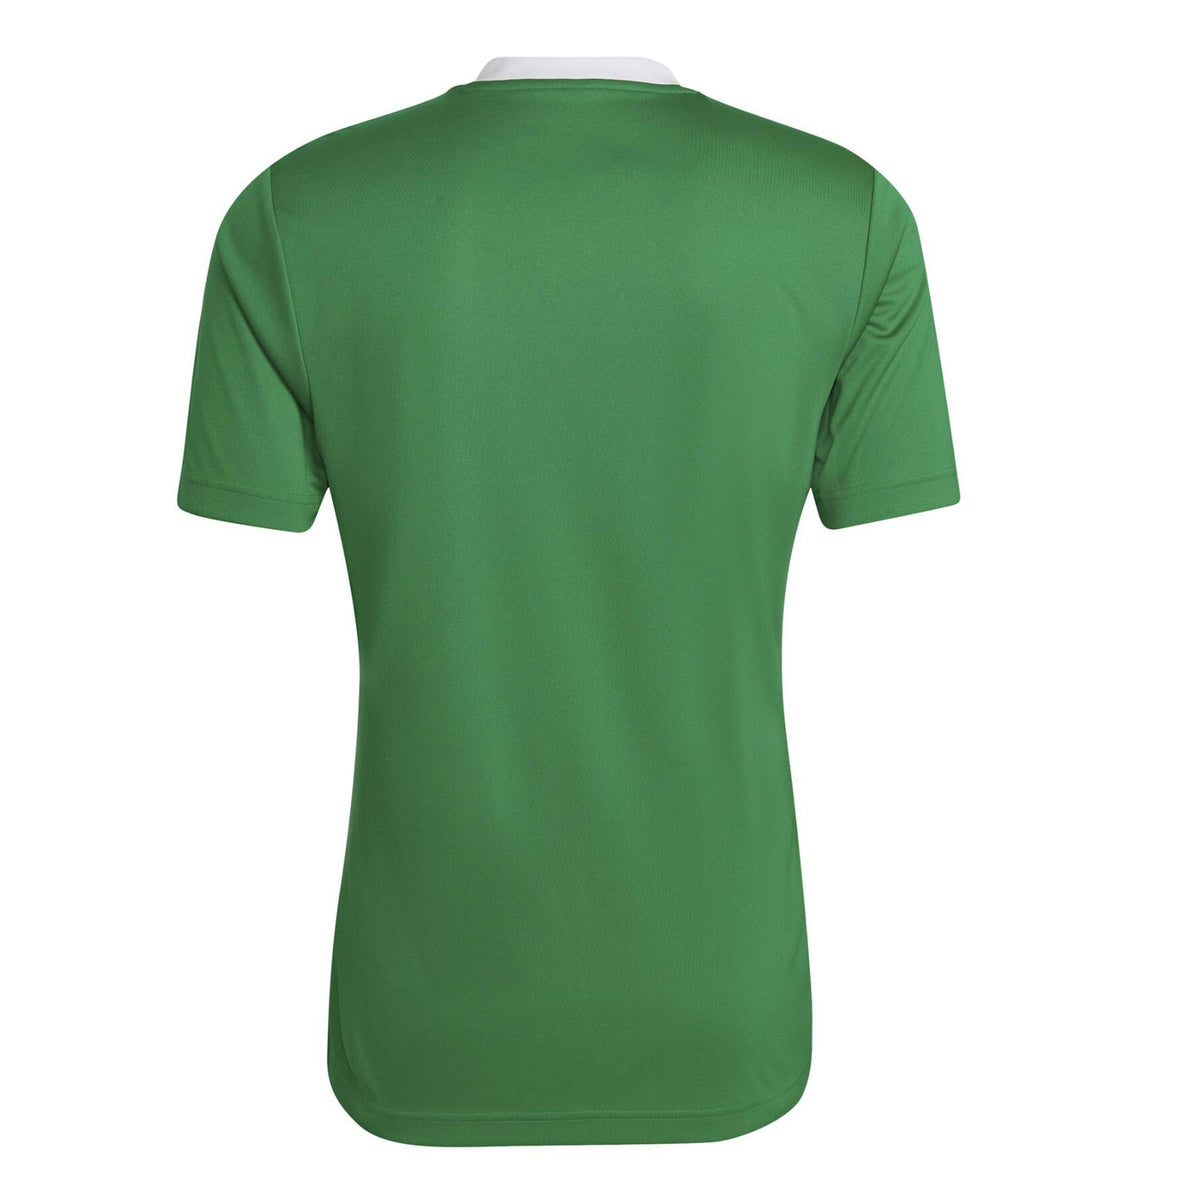 Wooburn Narkovians CC Adidas Training Shirt: Green